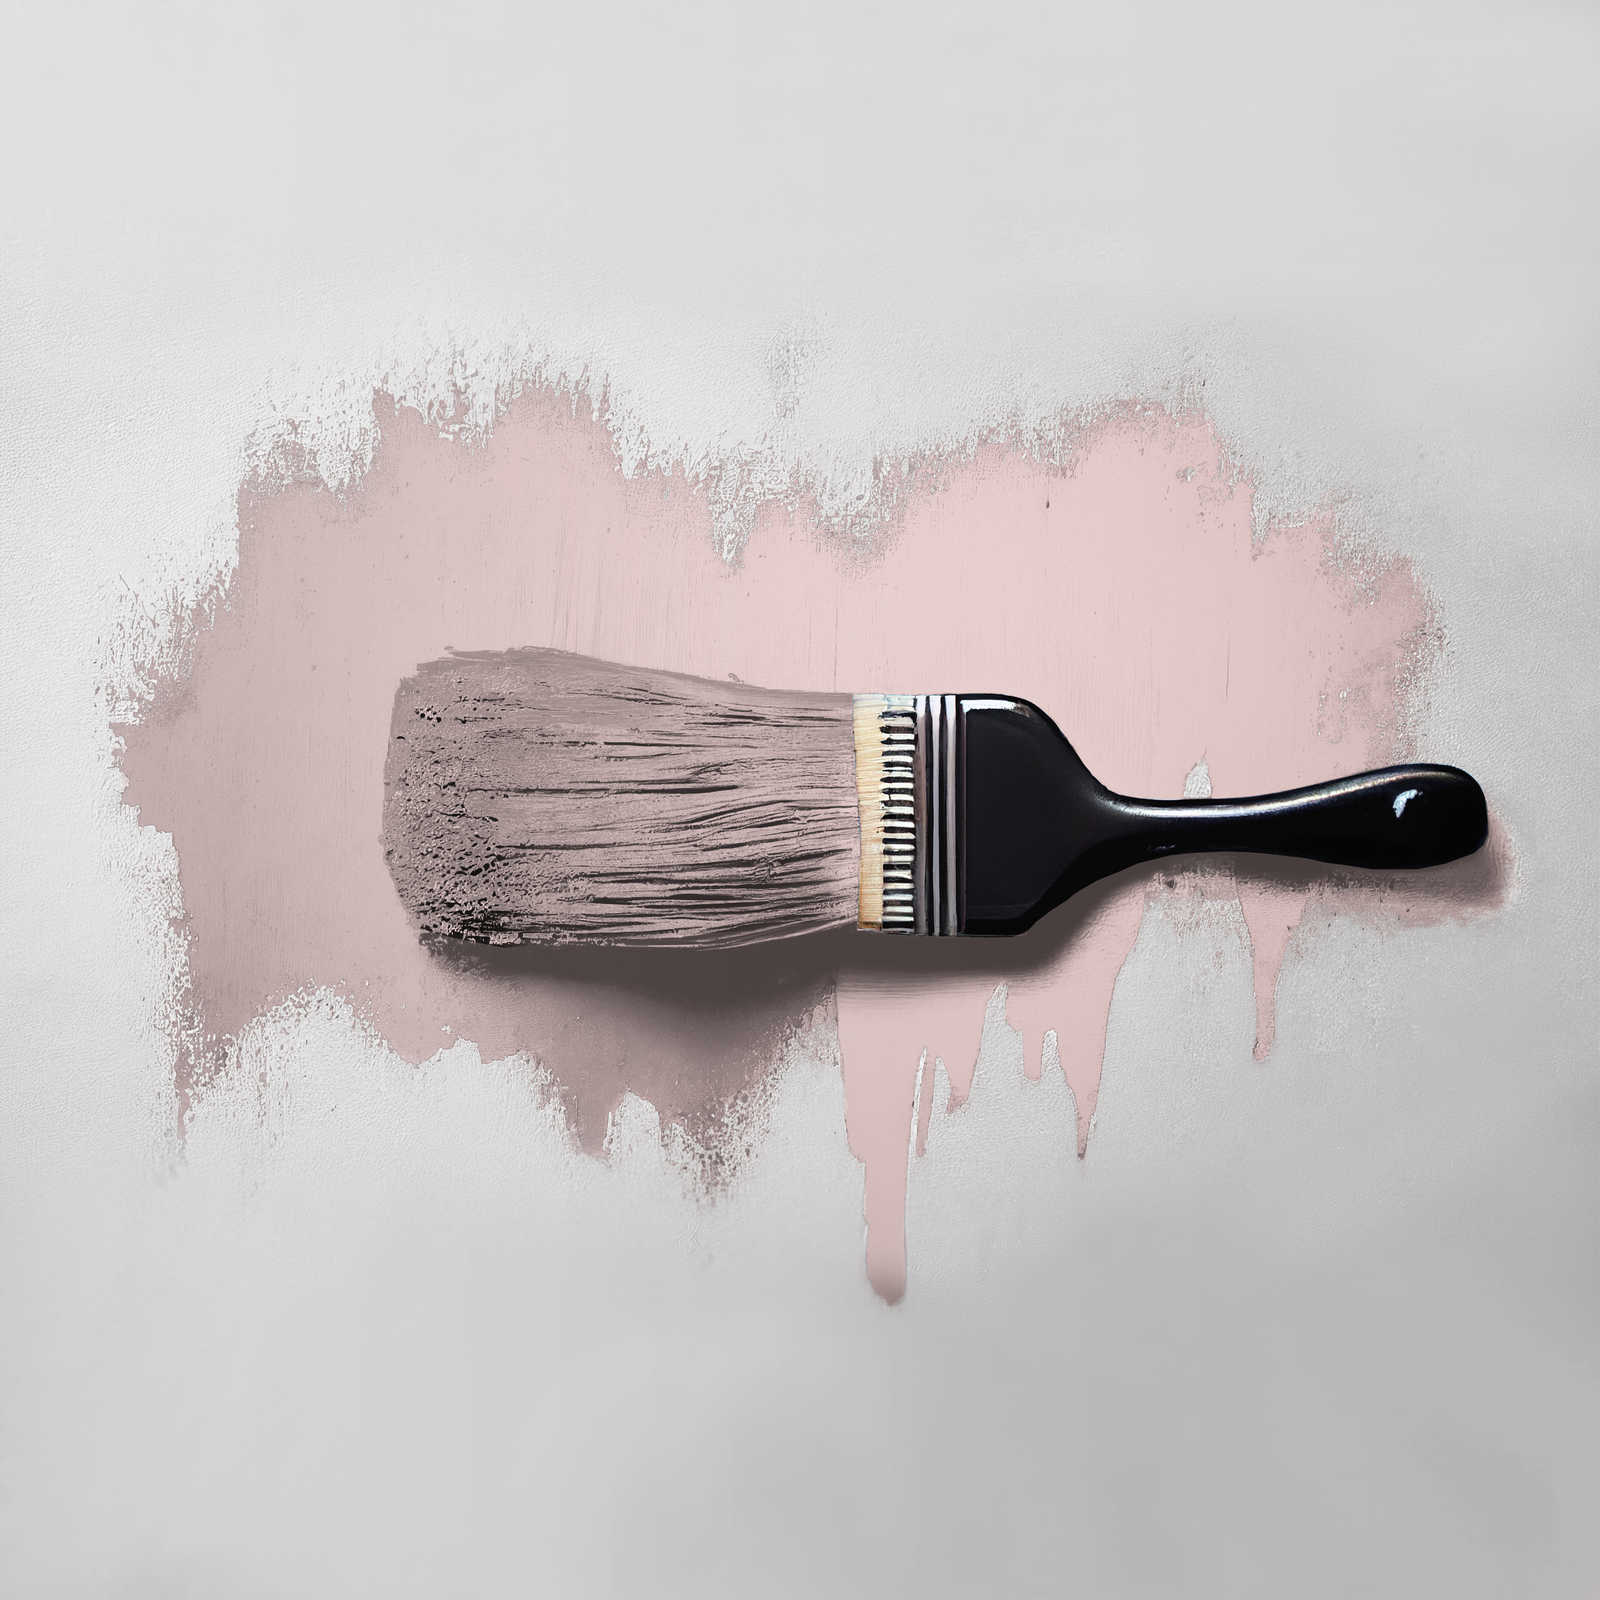             Pintura mural TCK7008 »Cute Cupcake« en rosa delicado – 2,5 litro
        